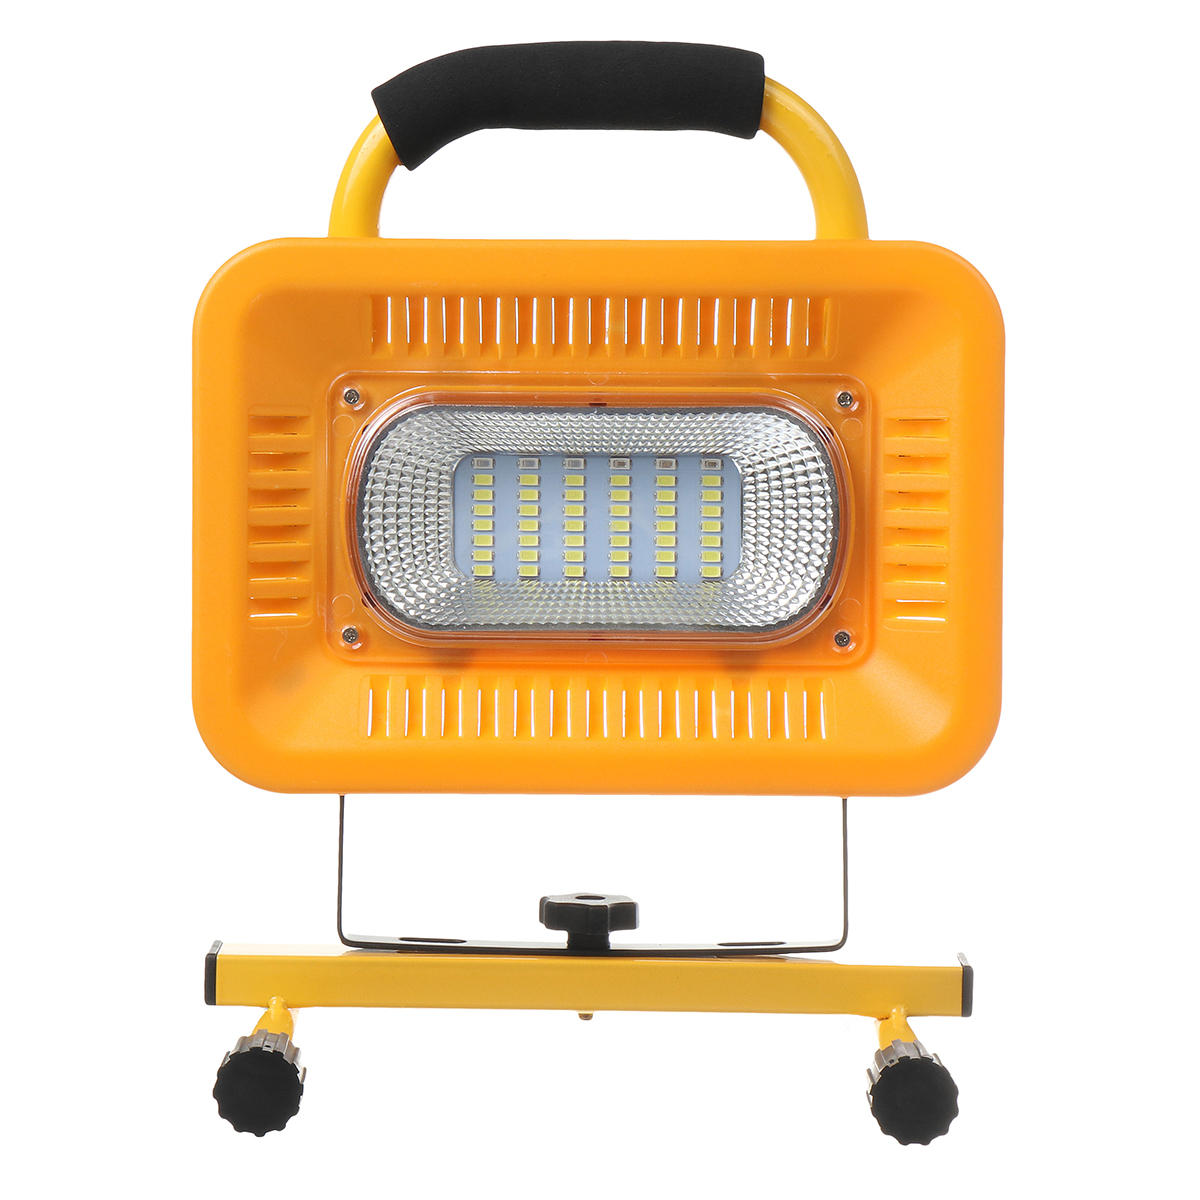 Lanterna de camping LED à prova d'água com 48 luzes e 3 modos de trabalho, banco de energia para viagens ao ar livre.